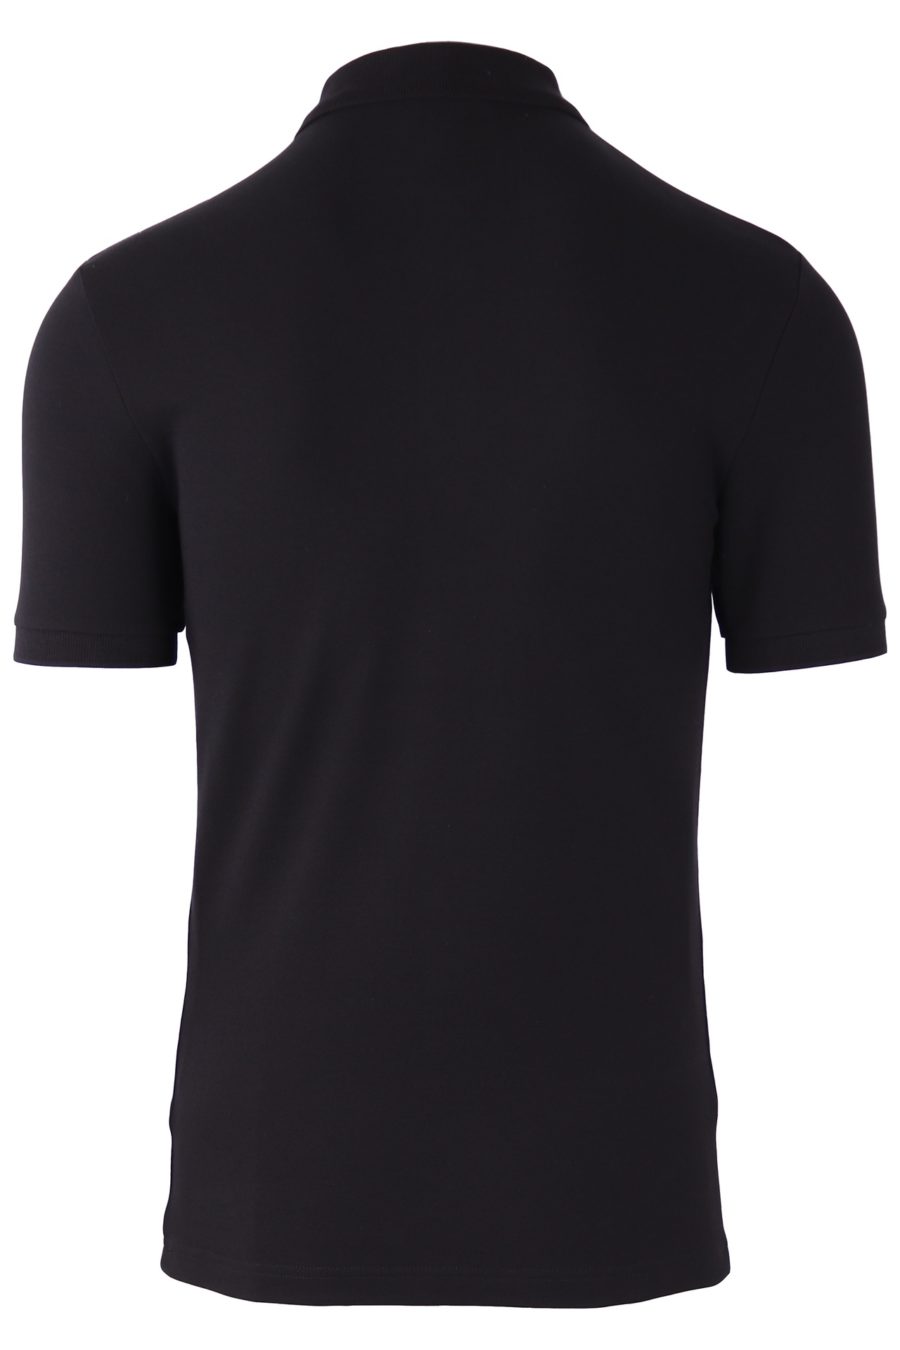 Camiseta interior Balmain negra con logo blanco - 6ce33c6e13bb416bd67925505ffdd82219817b8e 1